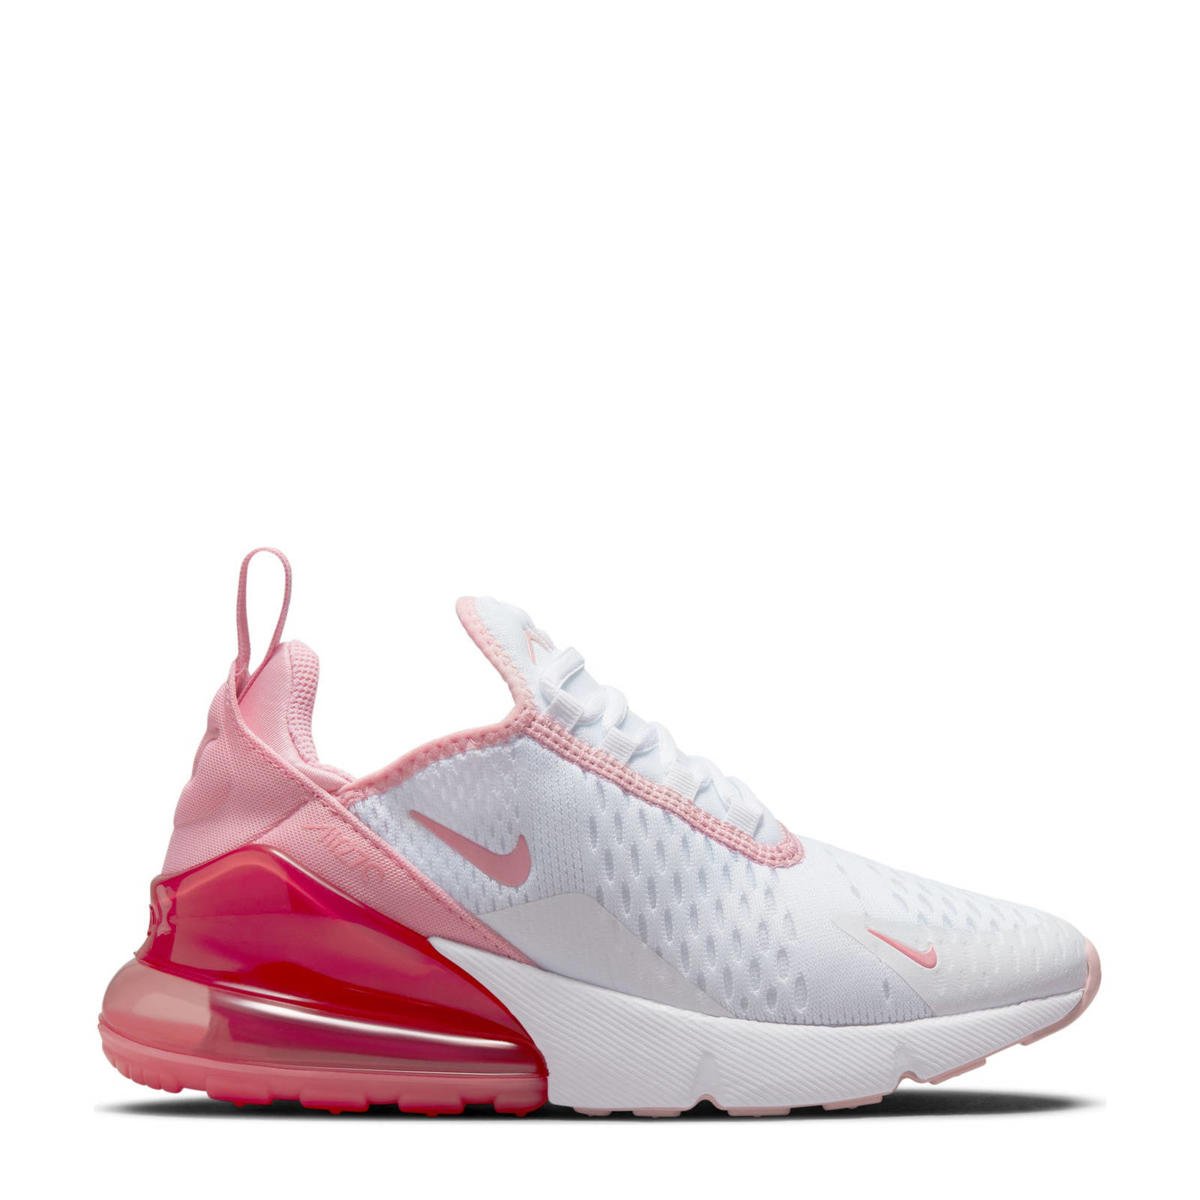 Lotsbestemming shuttle Onzin Nike Air Max 270 sneakers wit/roze | wehkamp